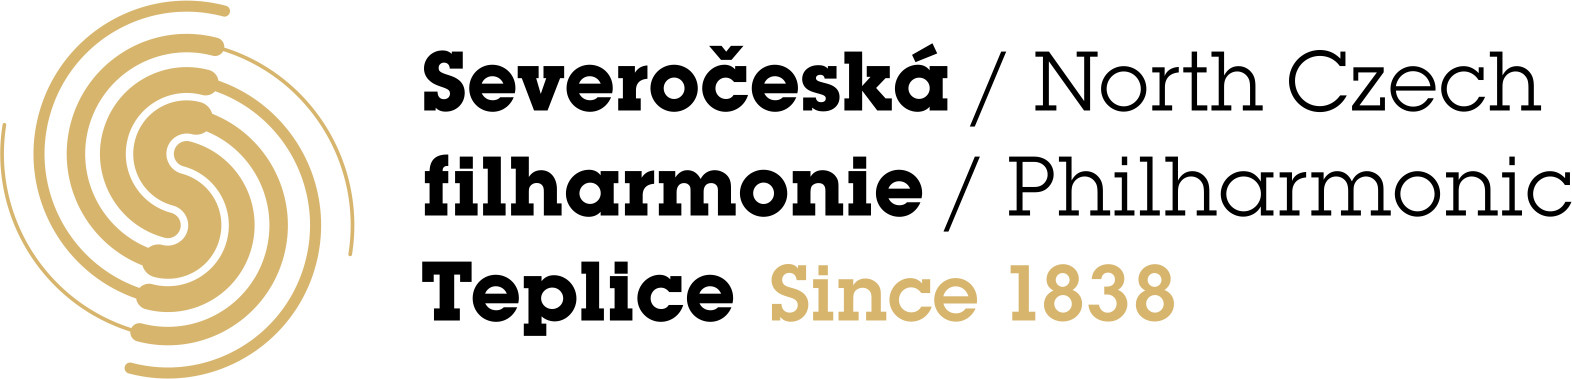 SCF Teplice logo gold